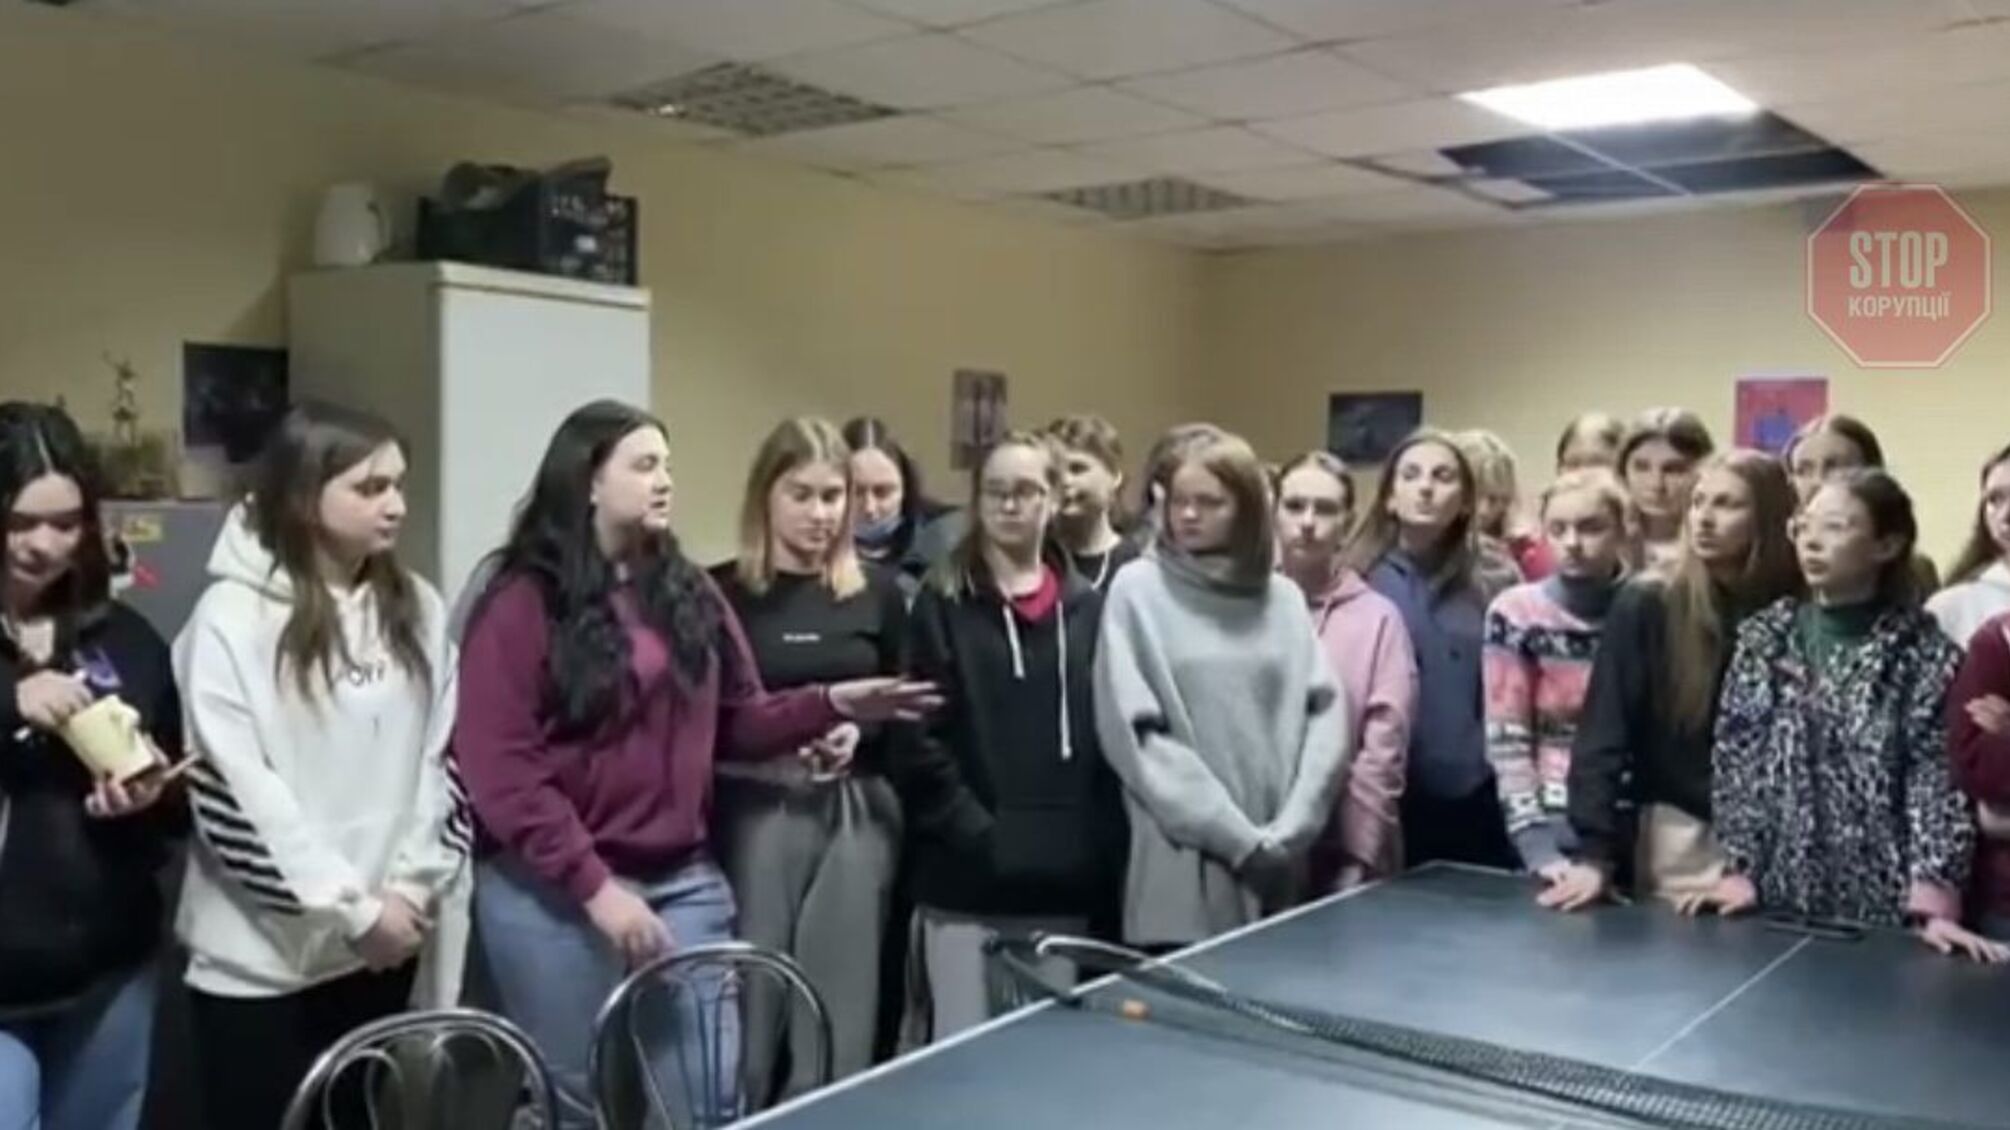 Студенти КНУКіМ заявили, що Поплавський виганяє їх із гуртожитку. Університет інформацію спростовує